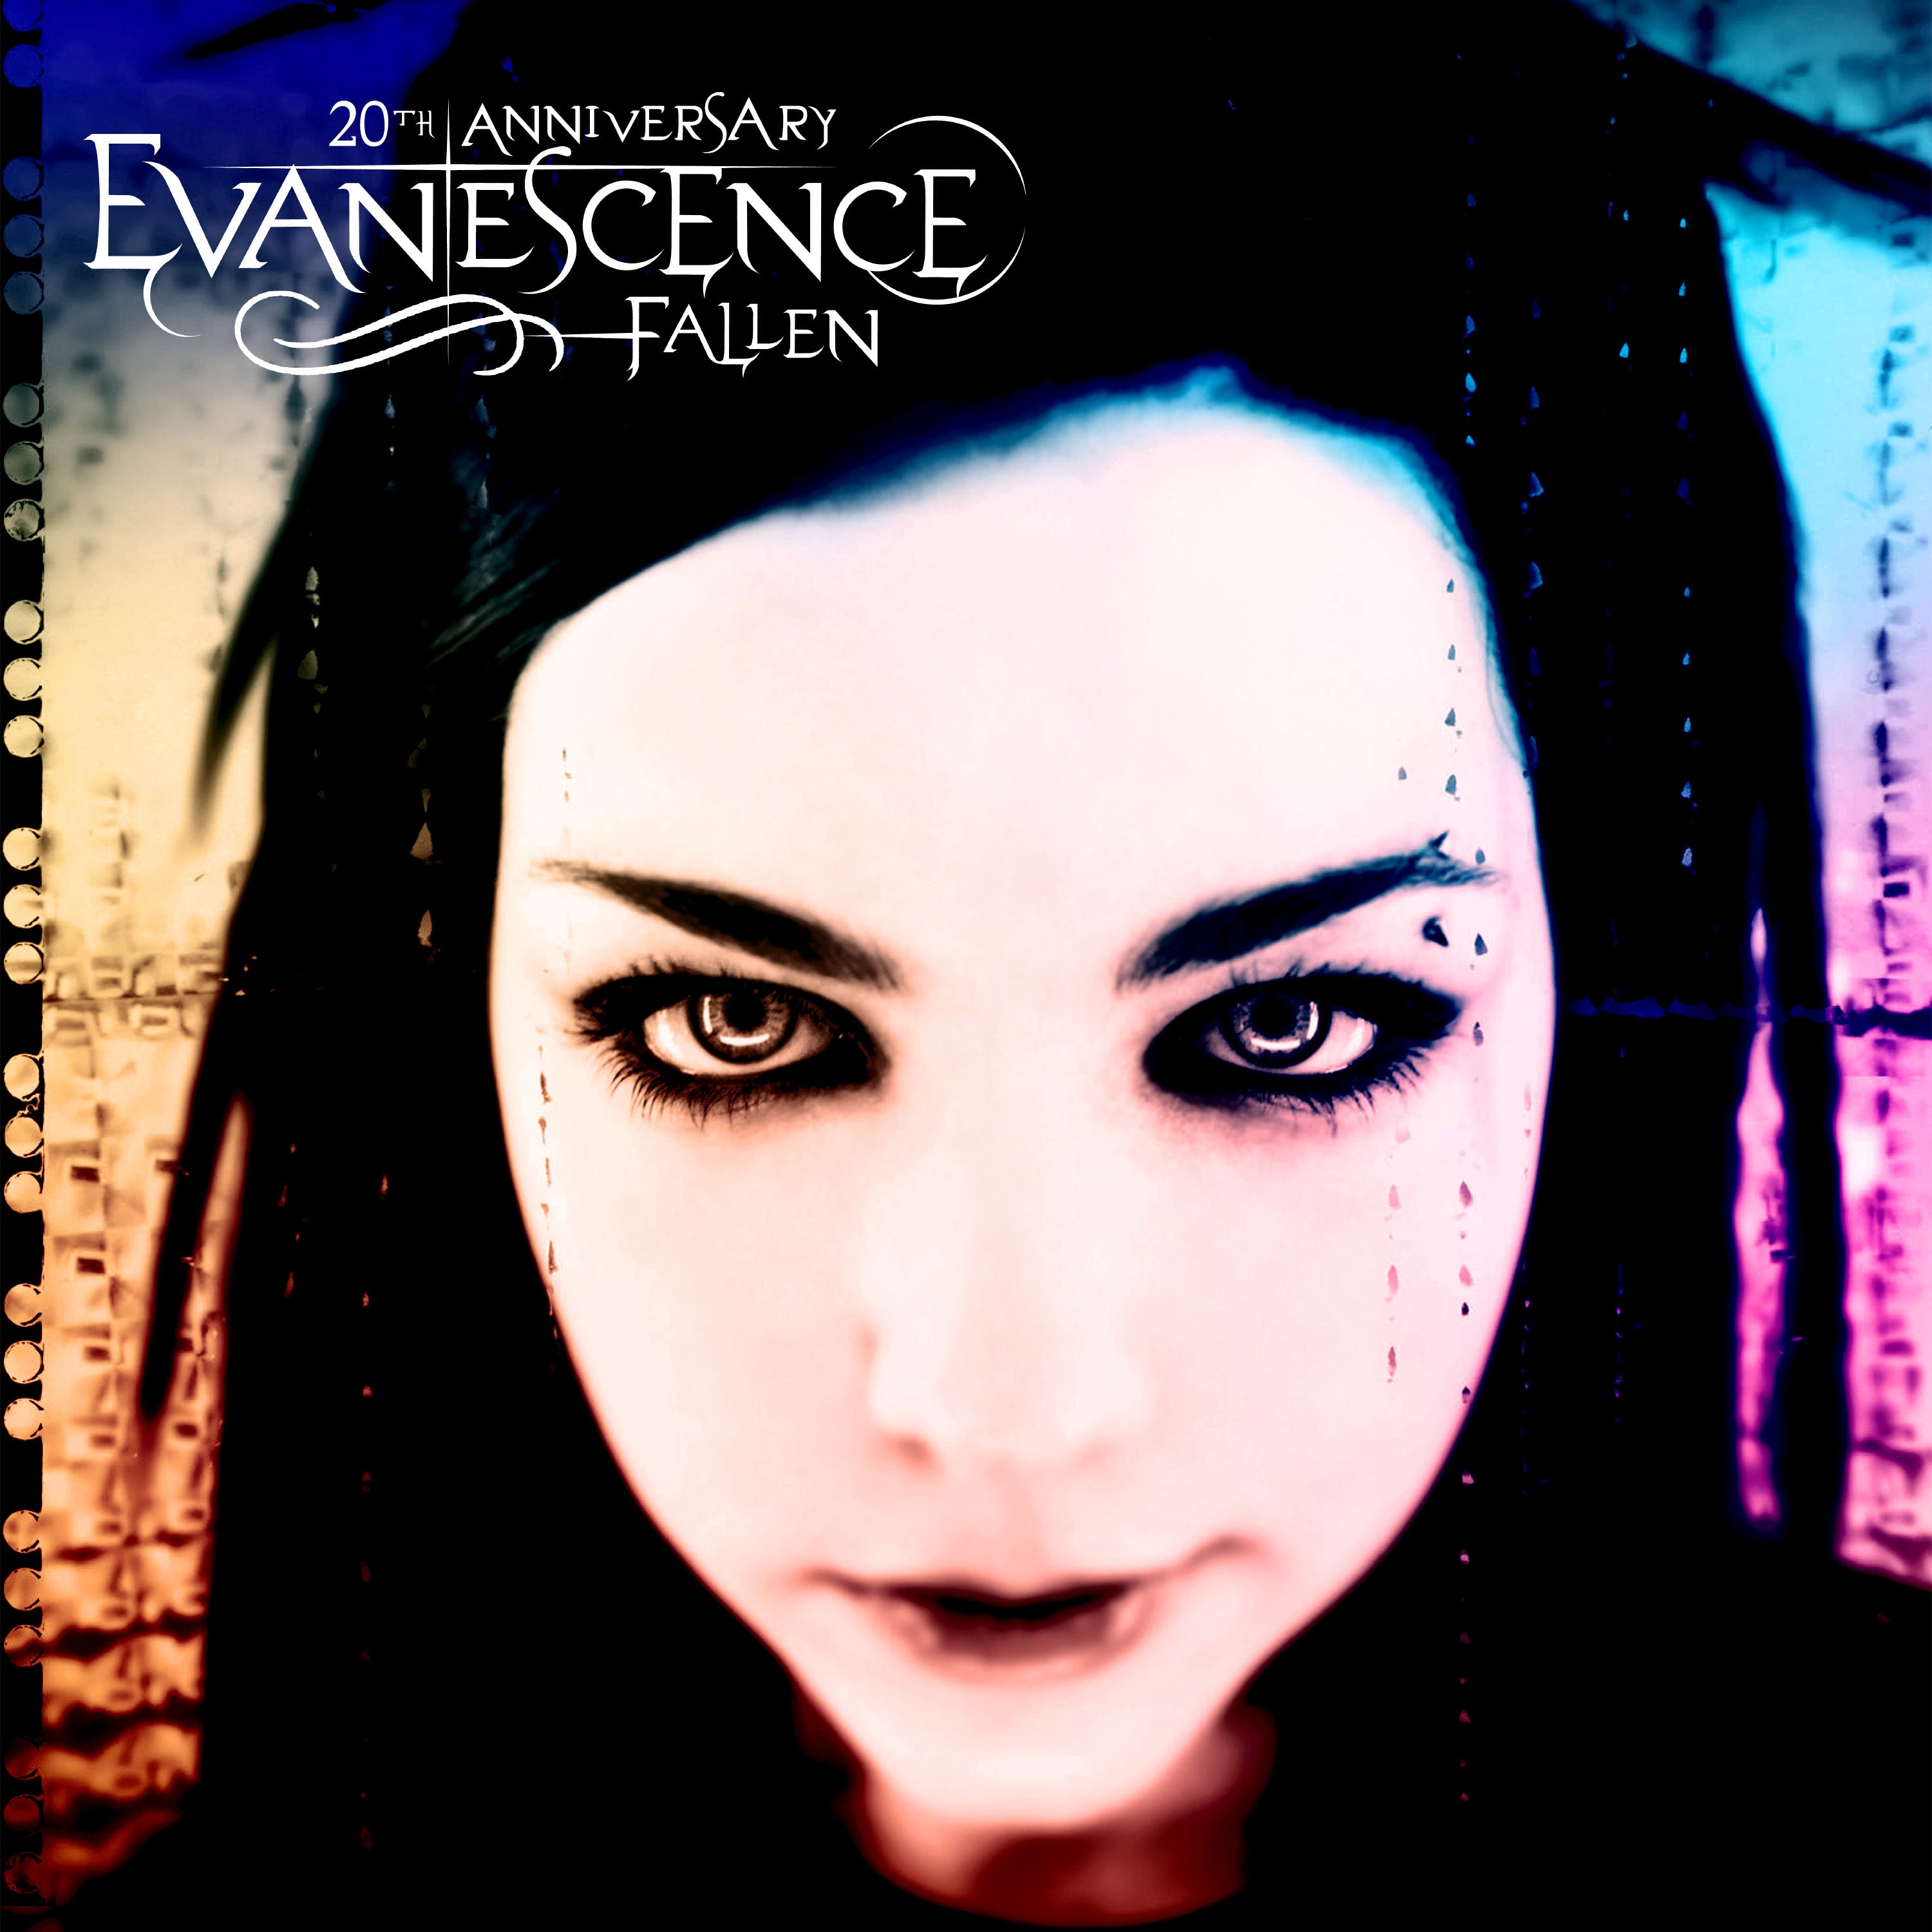 Evanescence - Fallen (20th Anniversary Edition): Limited Splatter Vinyl 2LP